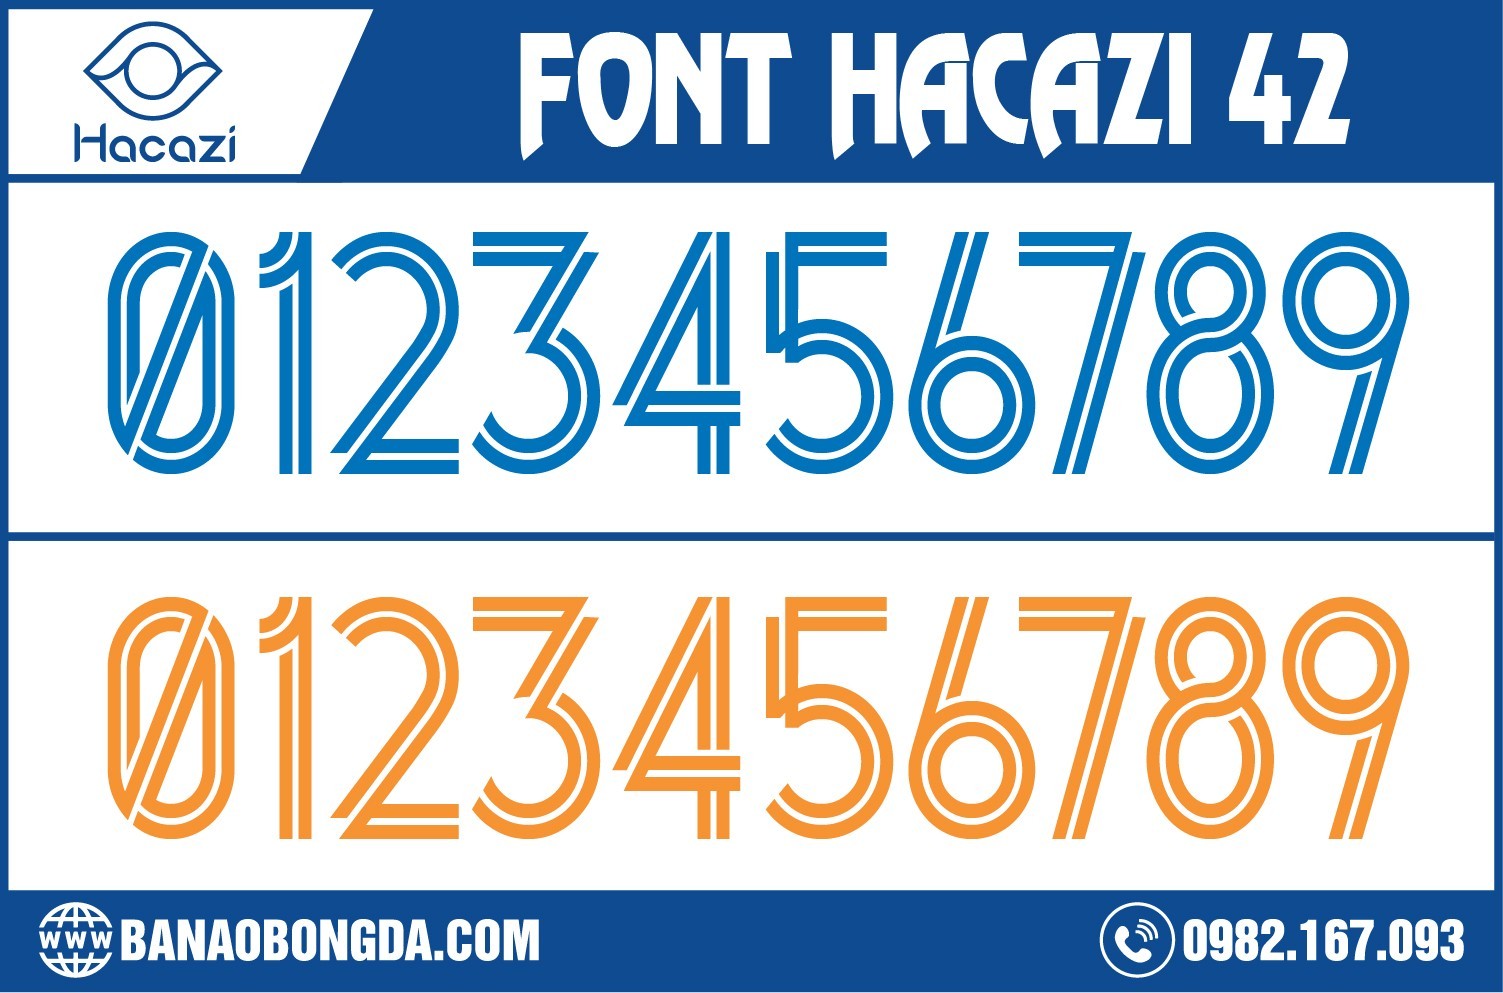 Một thiết kế font số áo bóng đá vô cùng nổi bật. Đặc biệt chúng còn được cải biến với dãy chữ số có nét thanh mảnh. Đây chính là từ dùng để miêu tả cho font số áo bóng đá 42 đặc biệt nhất năm 2023 tại Shop Hacazi Sport chúng tôi. 